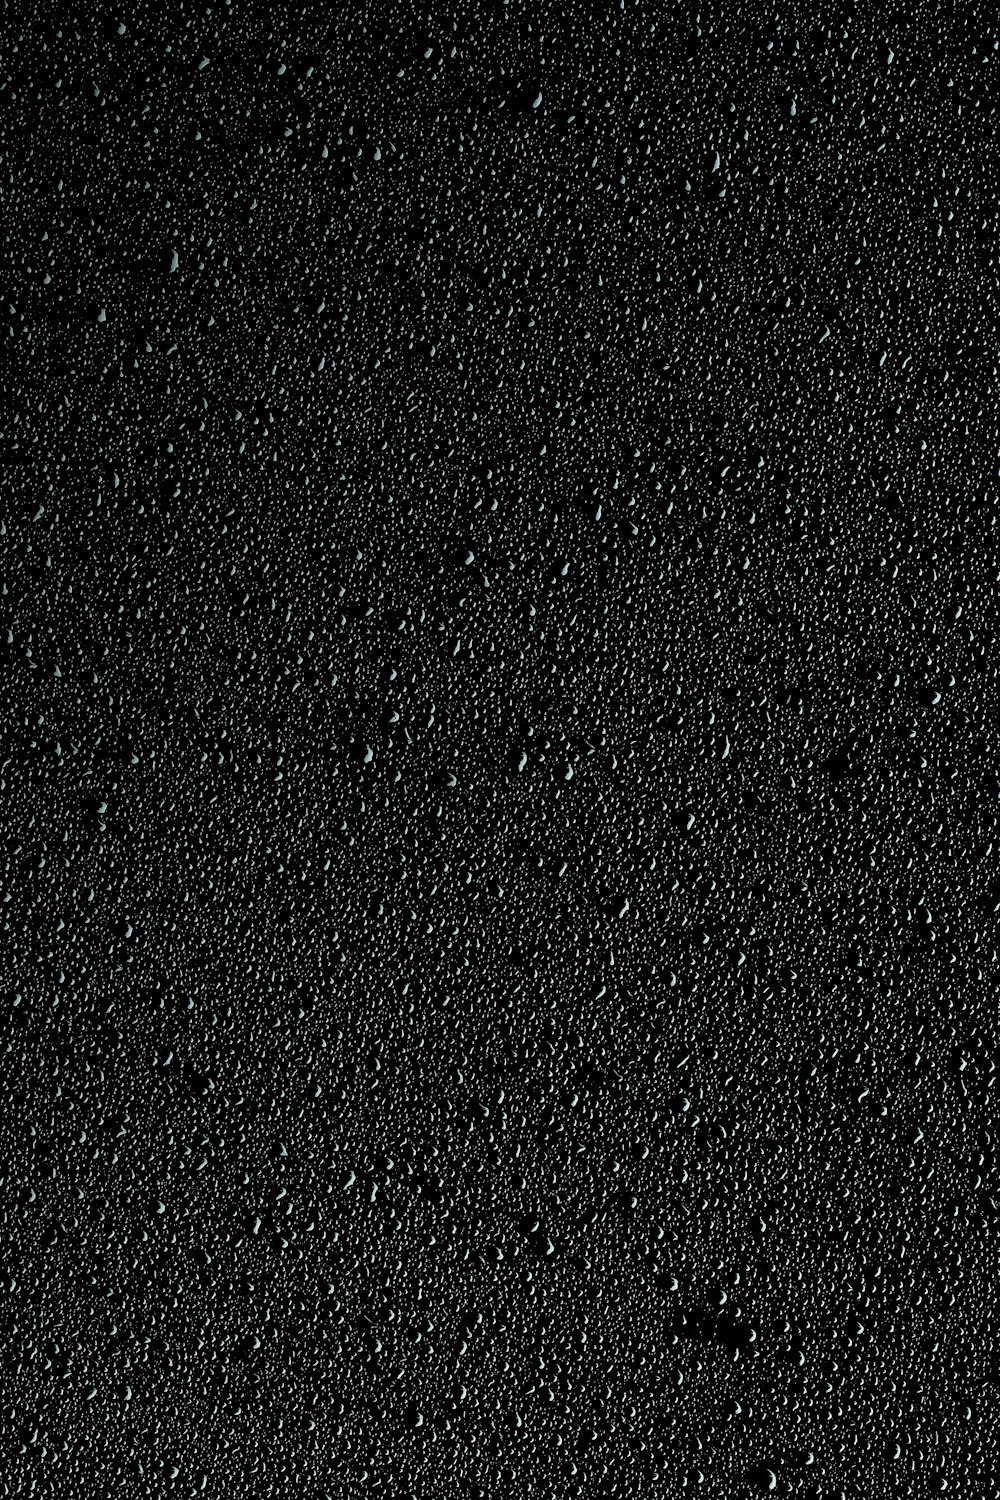 Black Dot Pictures | Download Free Images on Unsplash